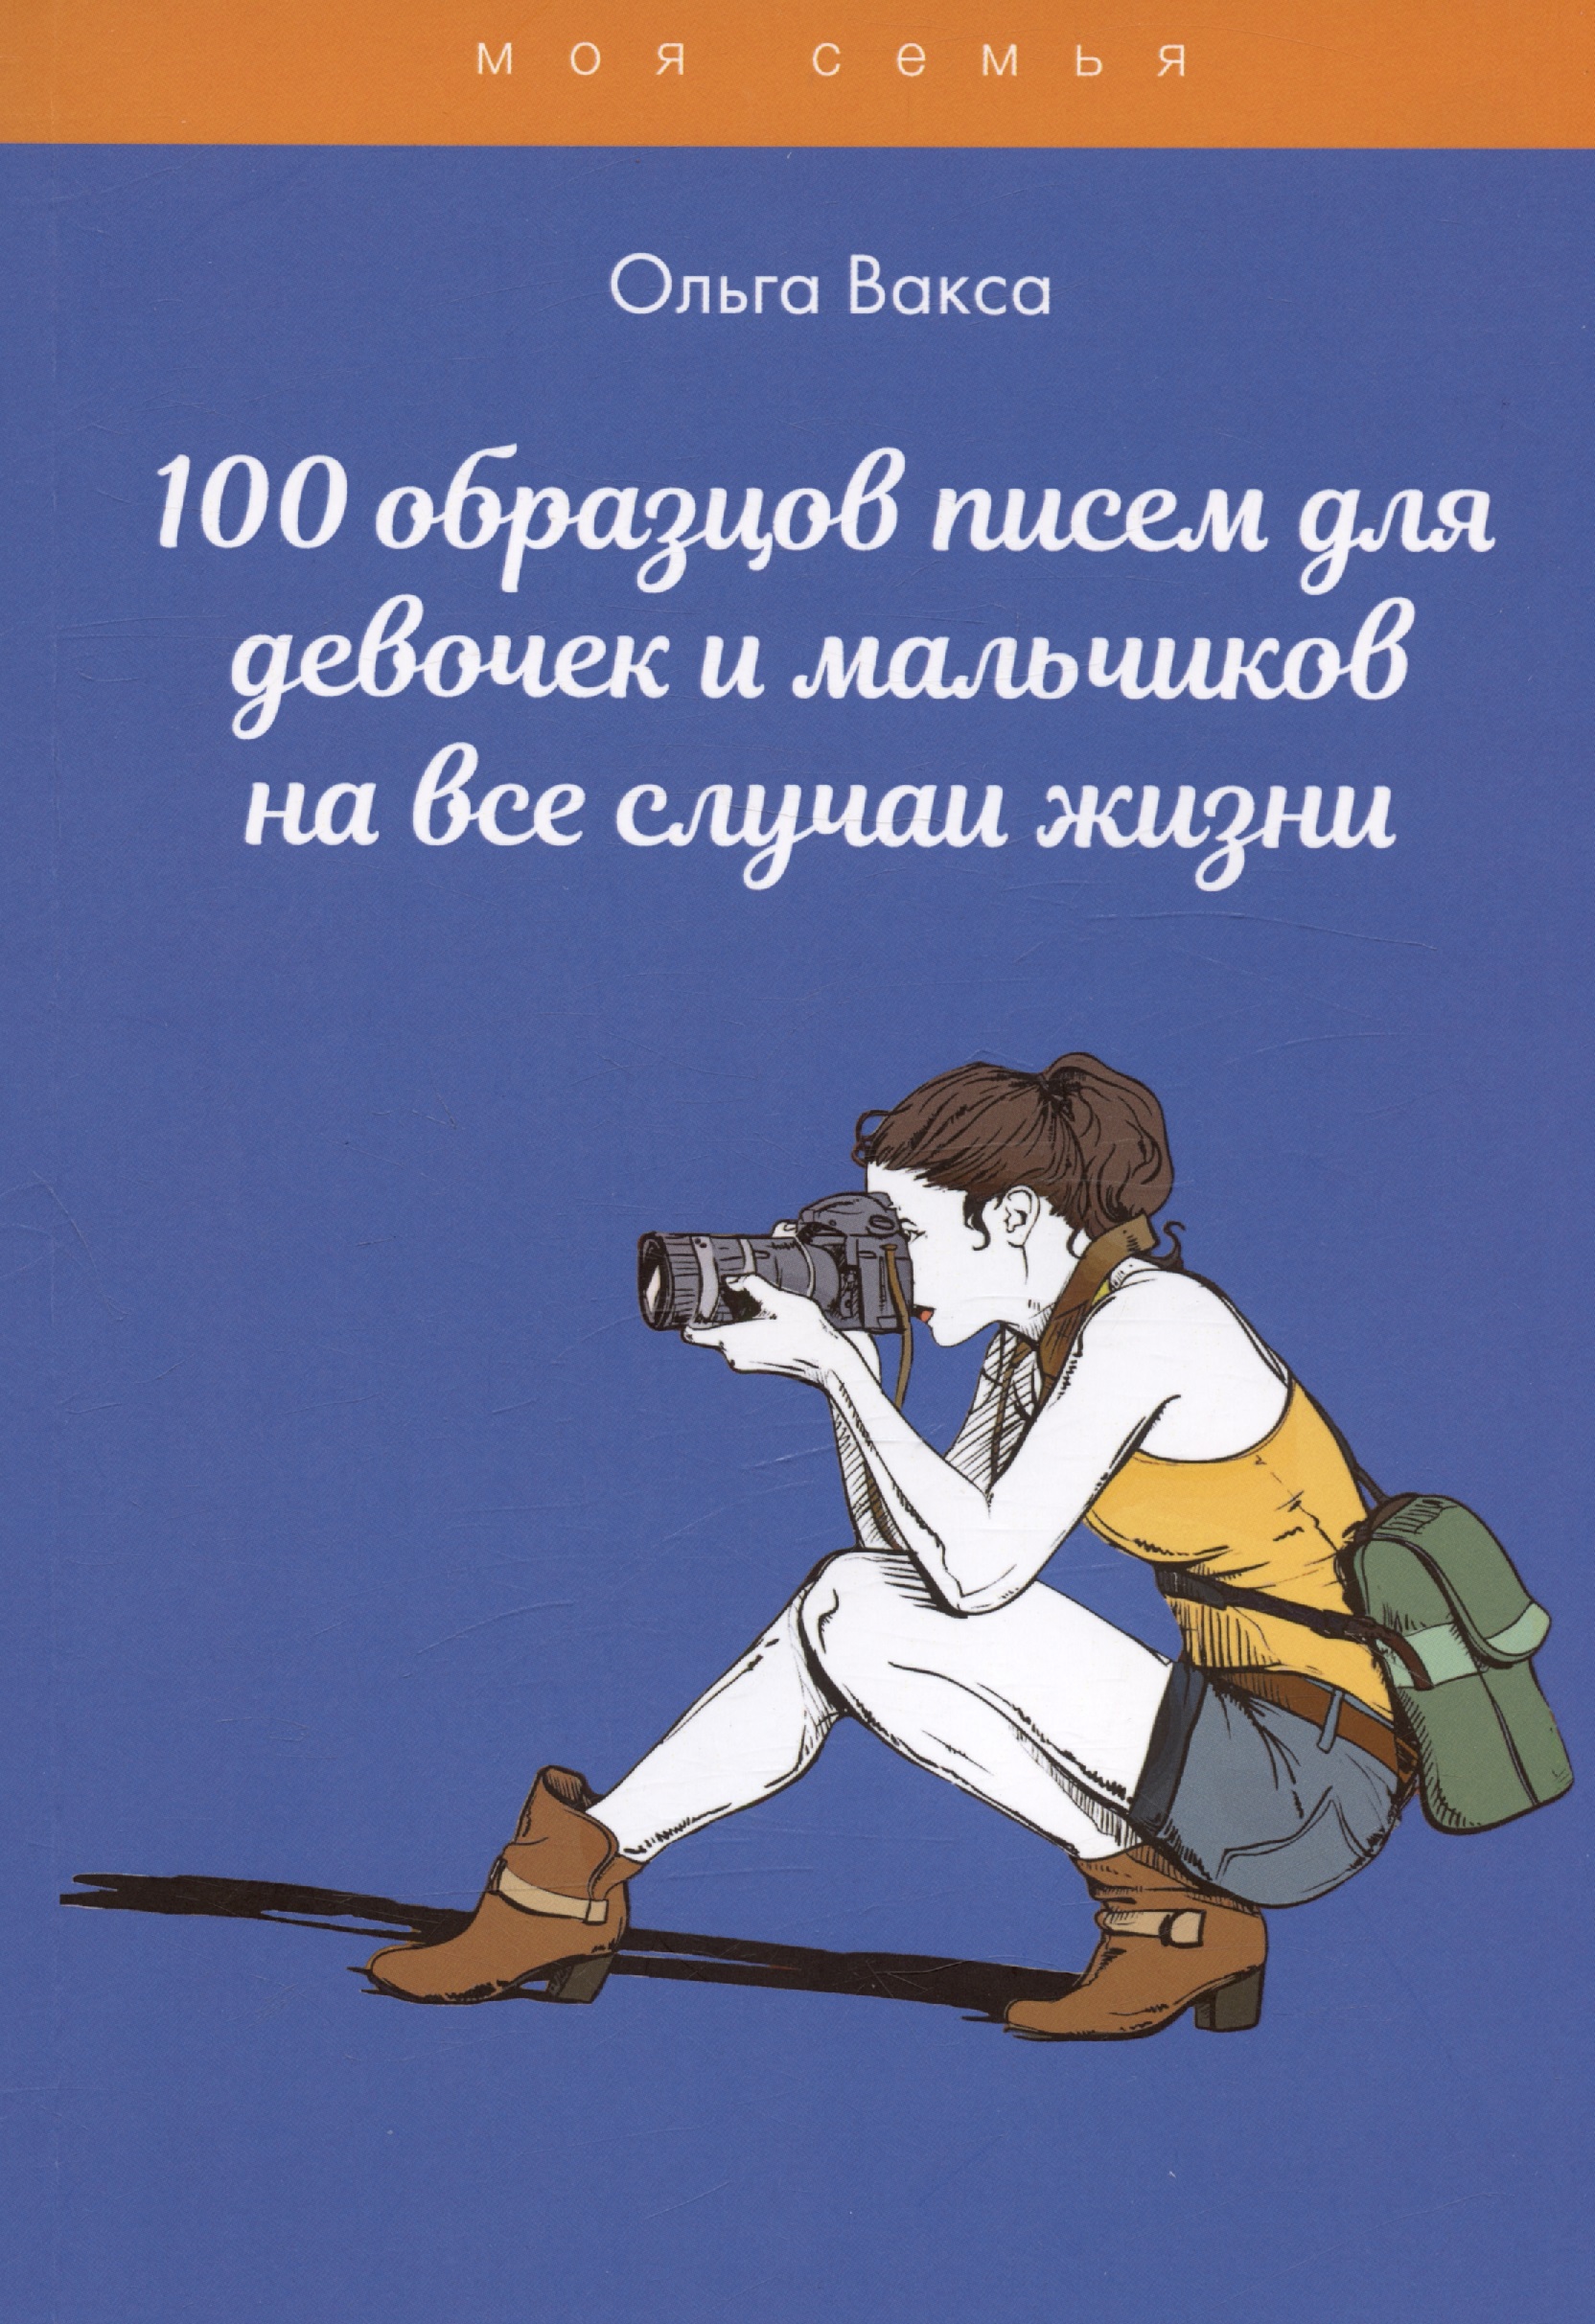 Вакса Ольга - 100 образцов писем для девочек и мальчиков на все случаи жизни